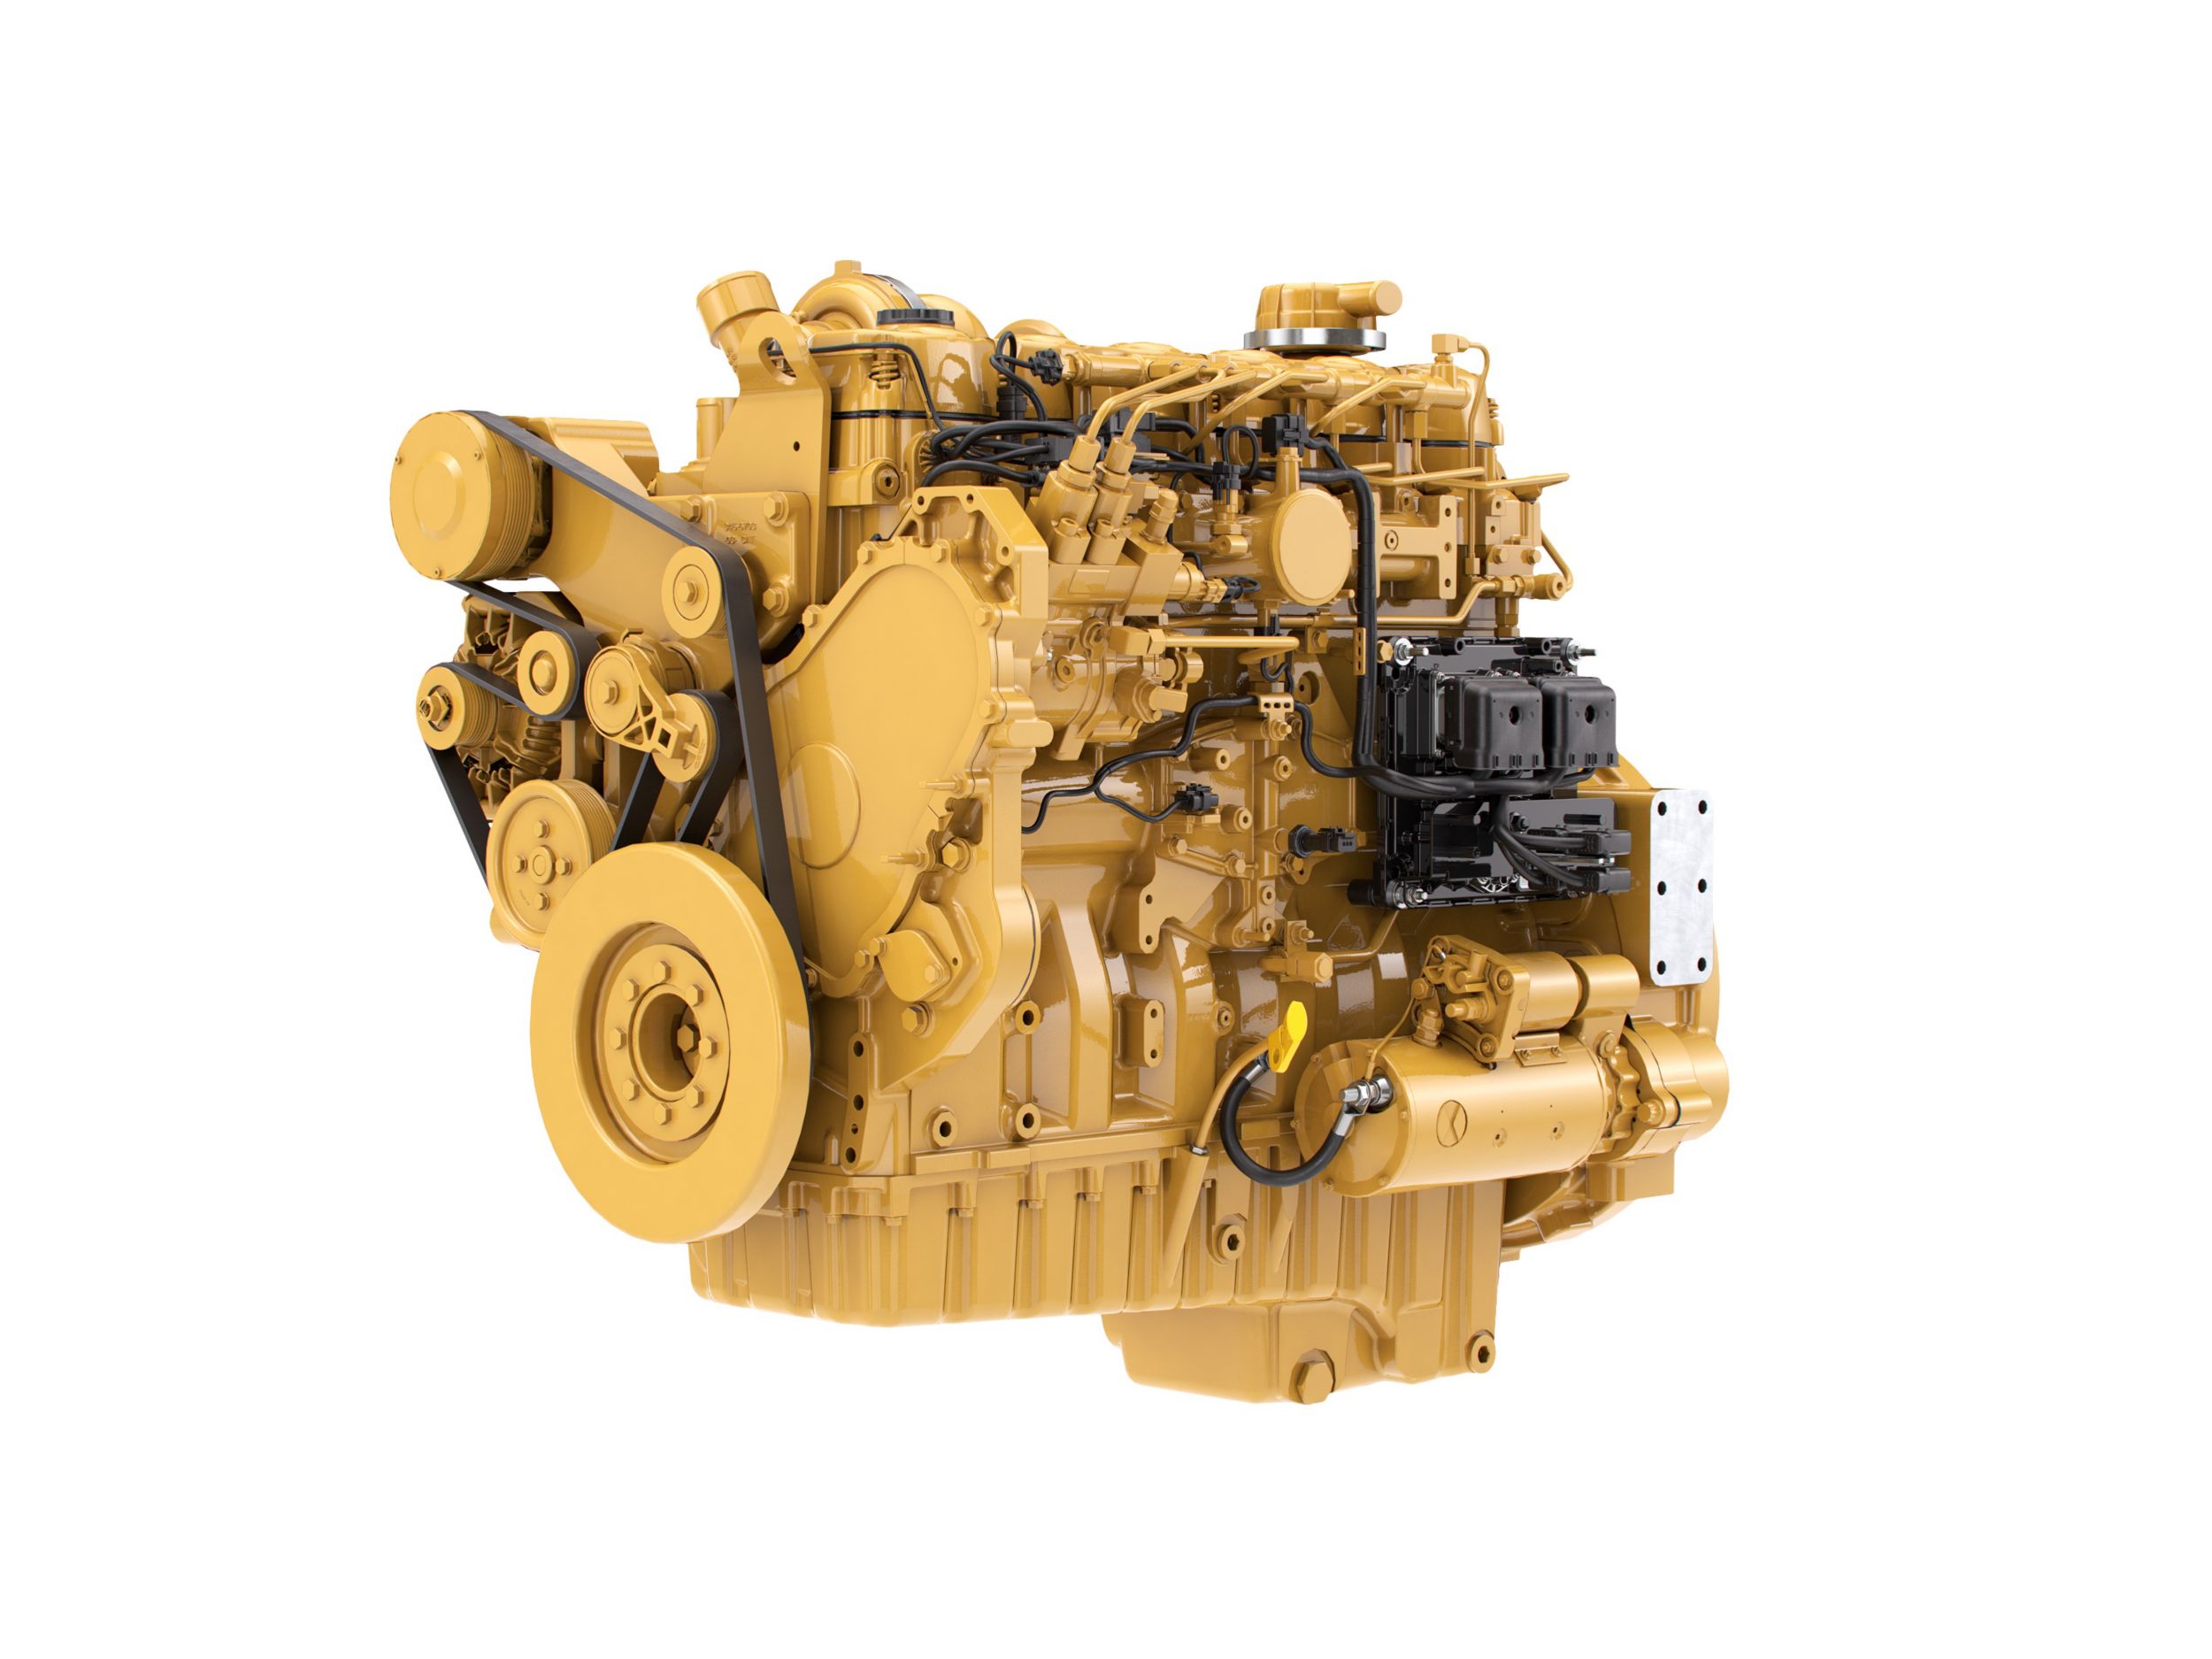 Motores Diesel C9.3 ACERT Tier 4 - Altamente Regulamentado